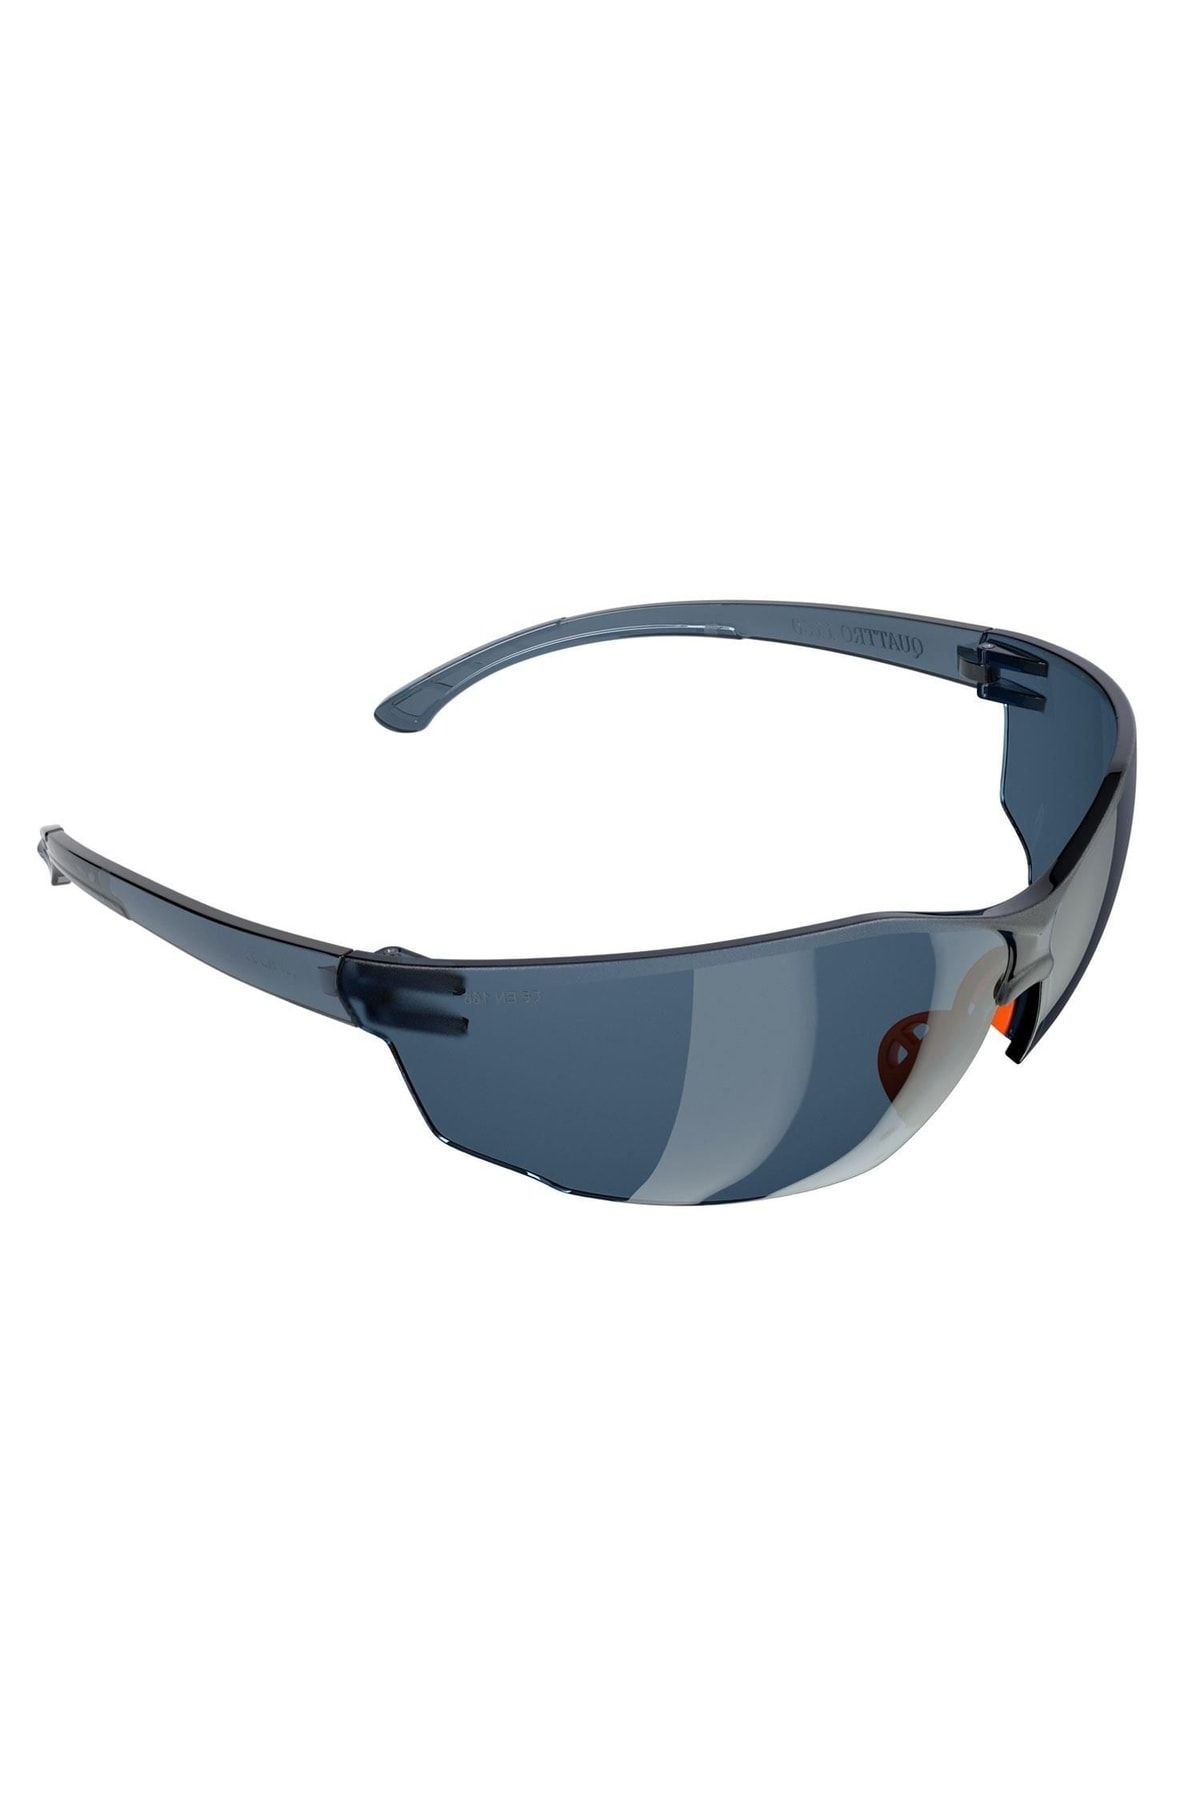 NZB Iş Güvenlik Gözlüğü Uv Koruyucu Silikonlu Gözlük S1100 Füme